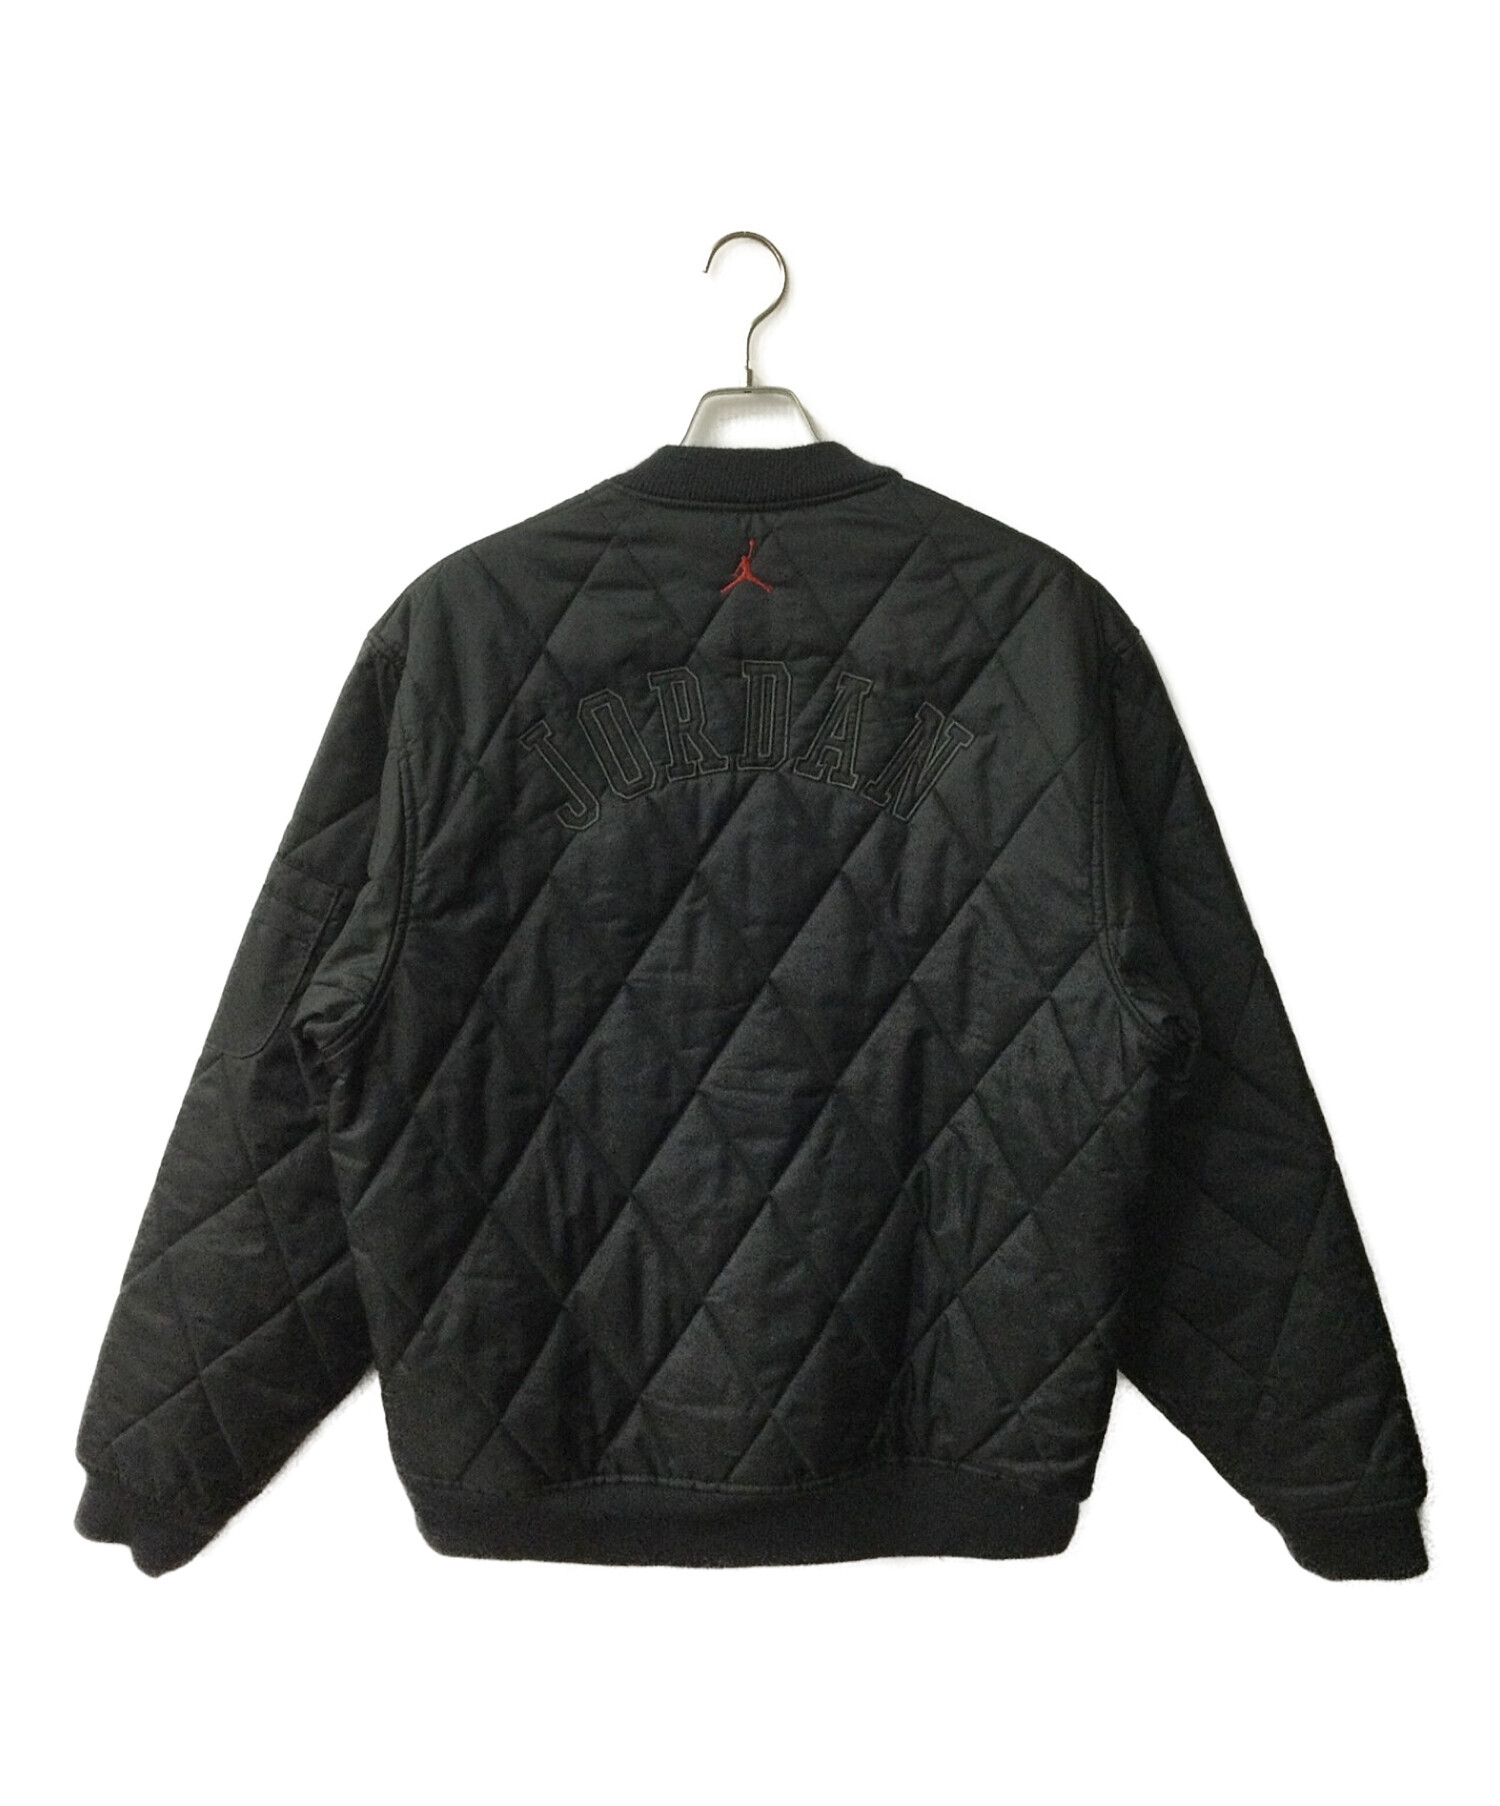 NIKE (ナイキ) キルティングジャケット ブラック×ホワイト サイズ:M